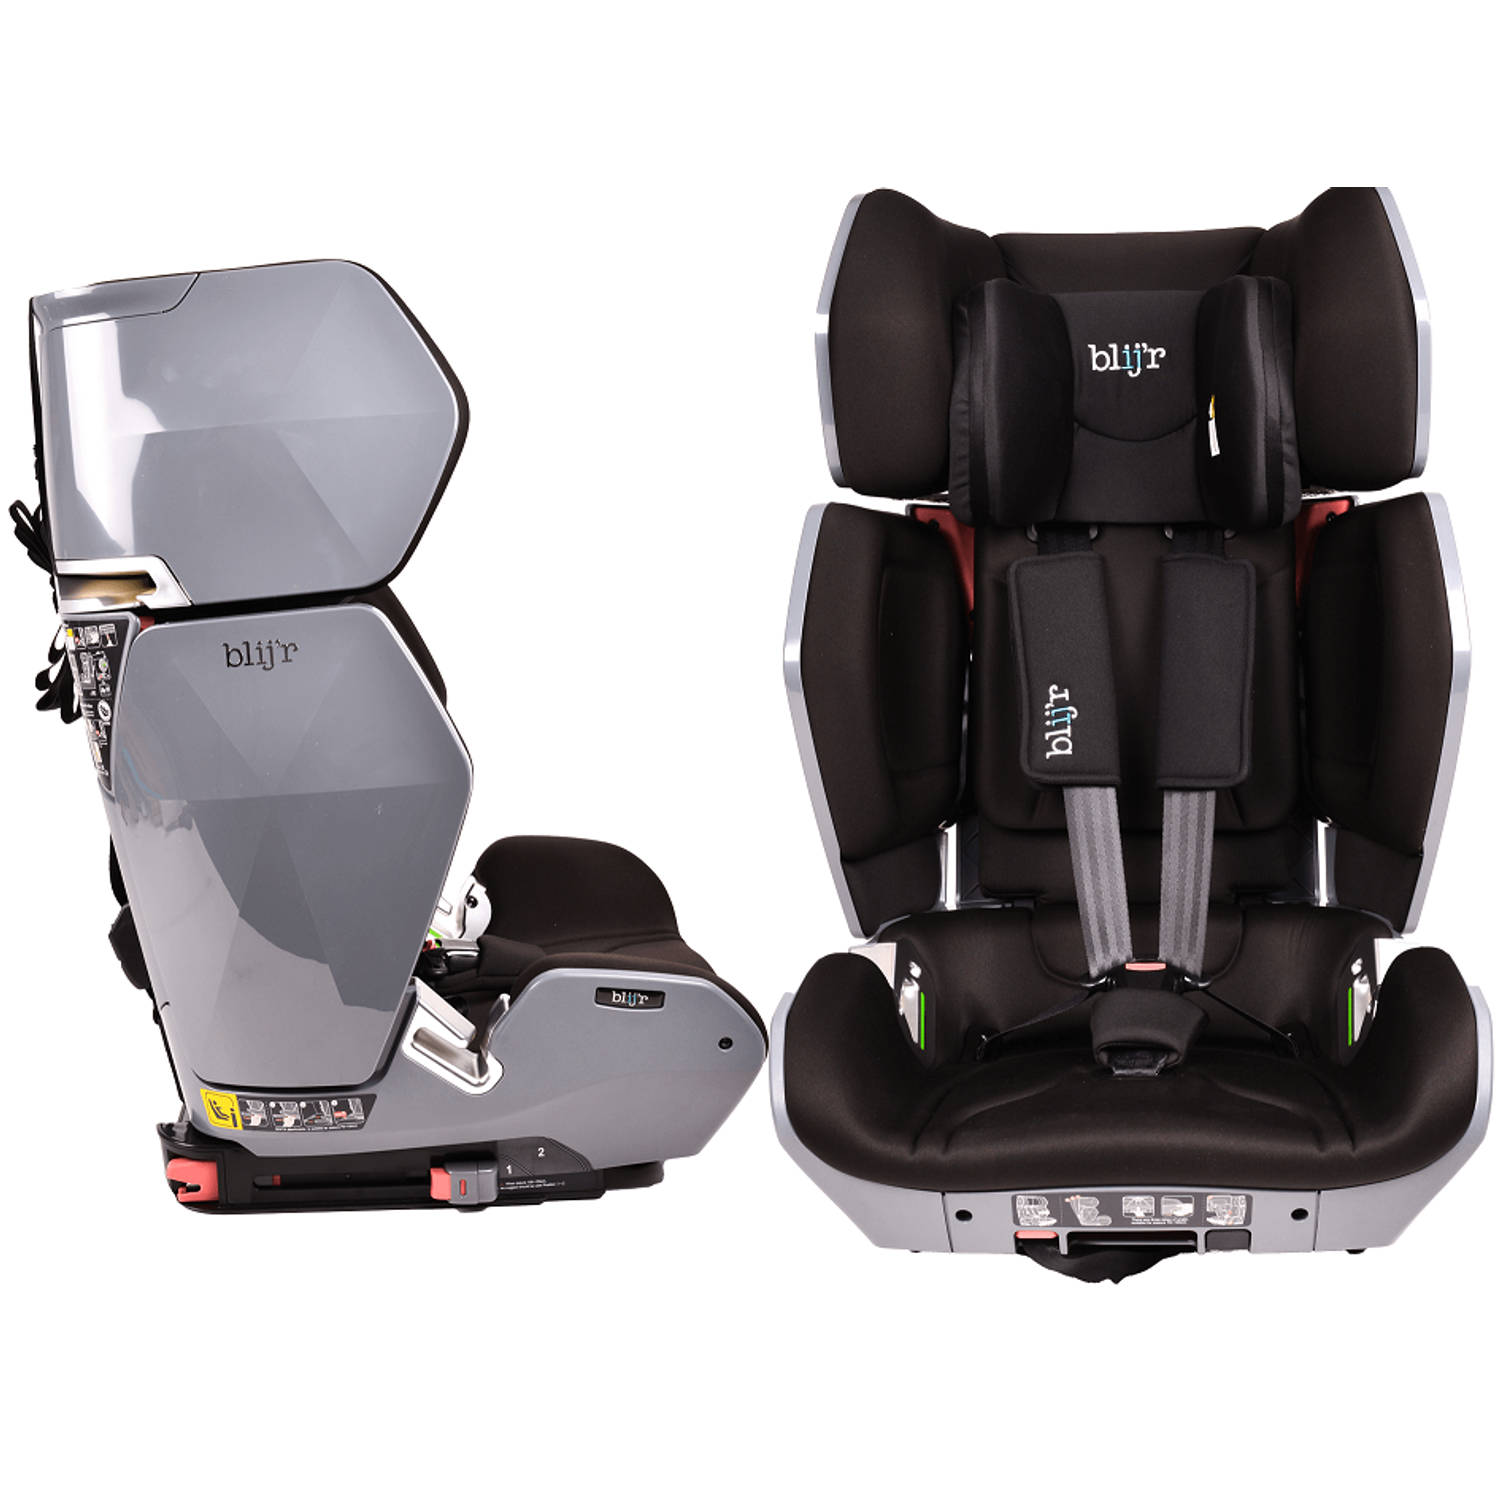 blij&apos;r Uniek - luxe Autostoel - Meegroei stoel in breedte en hoogte - Isofix - geschikt voor 15-36 kg - in 3 kleuren